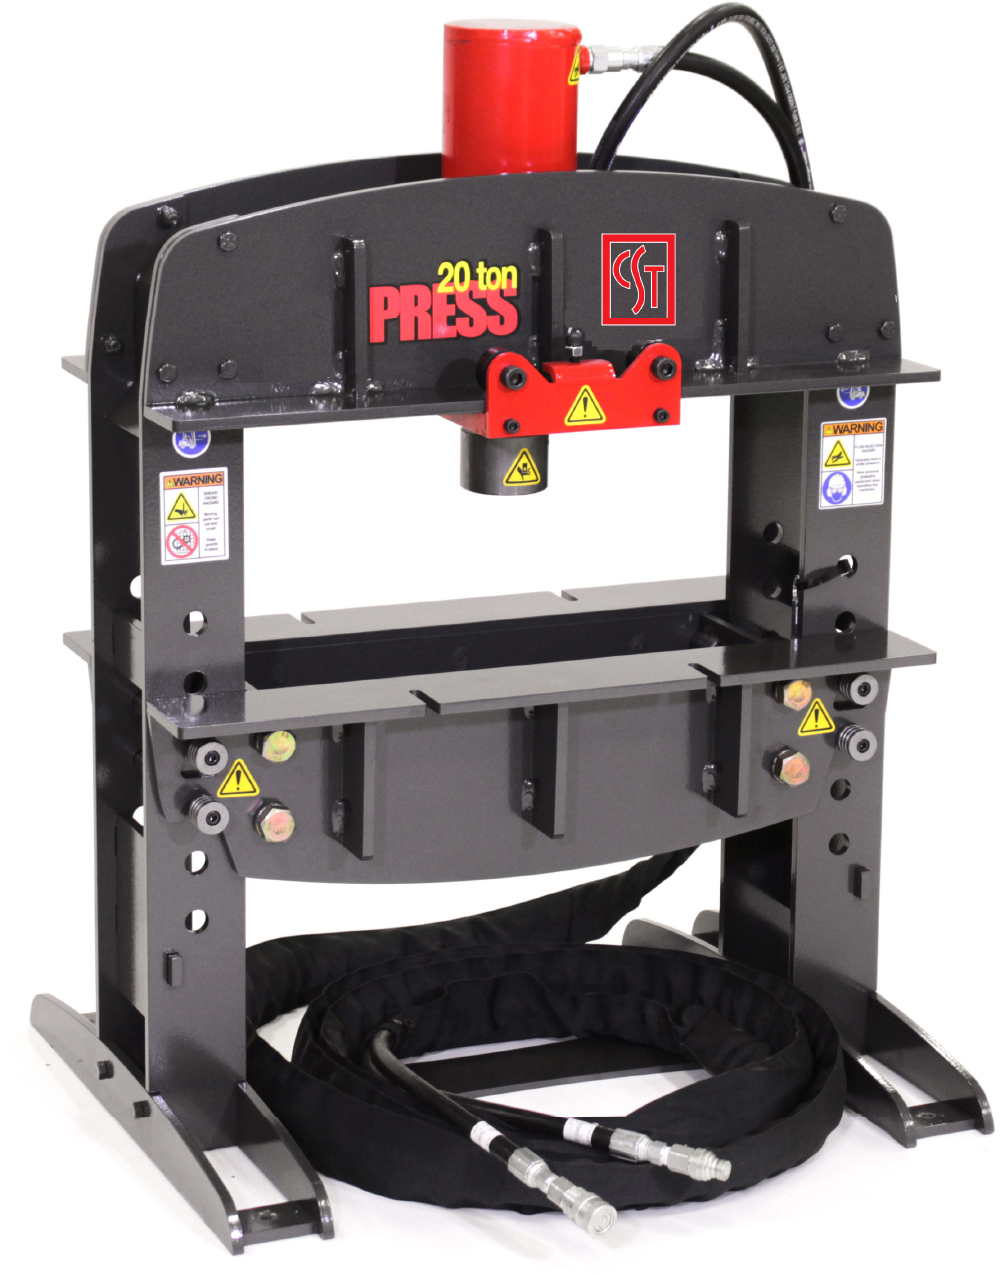 20 Ton Shop Press